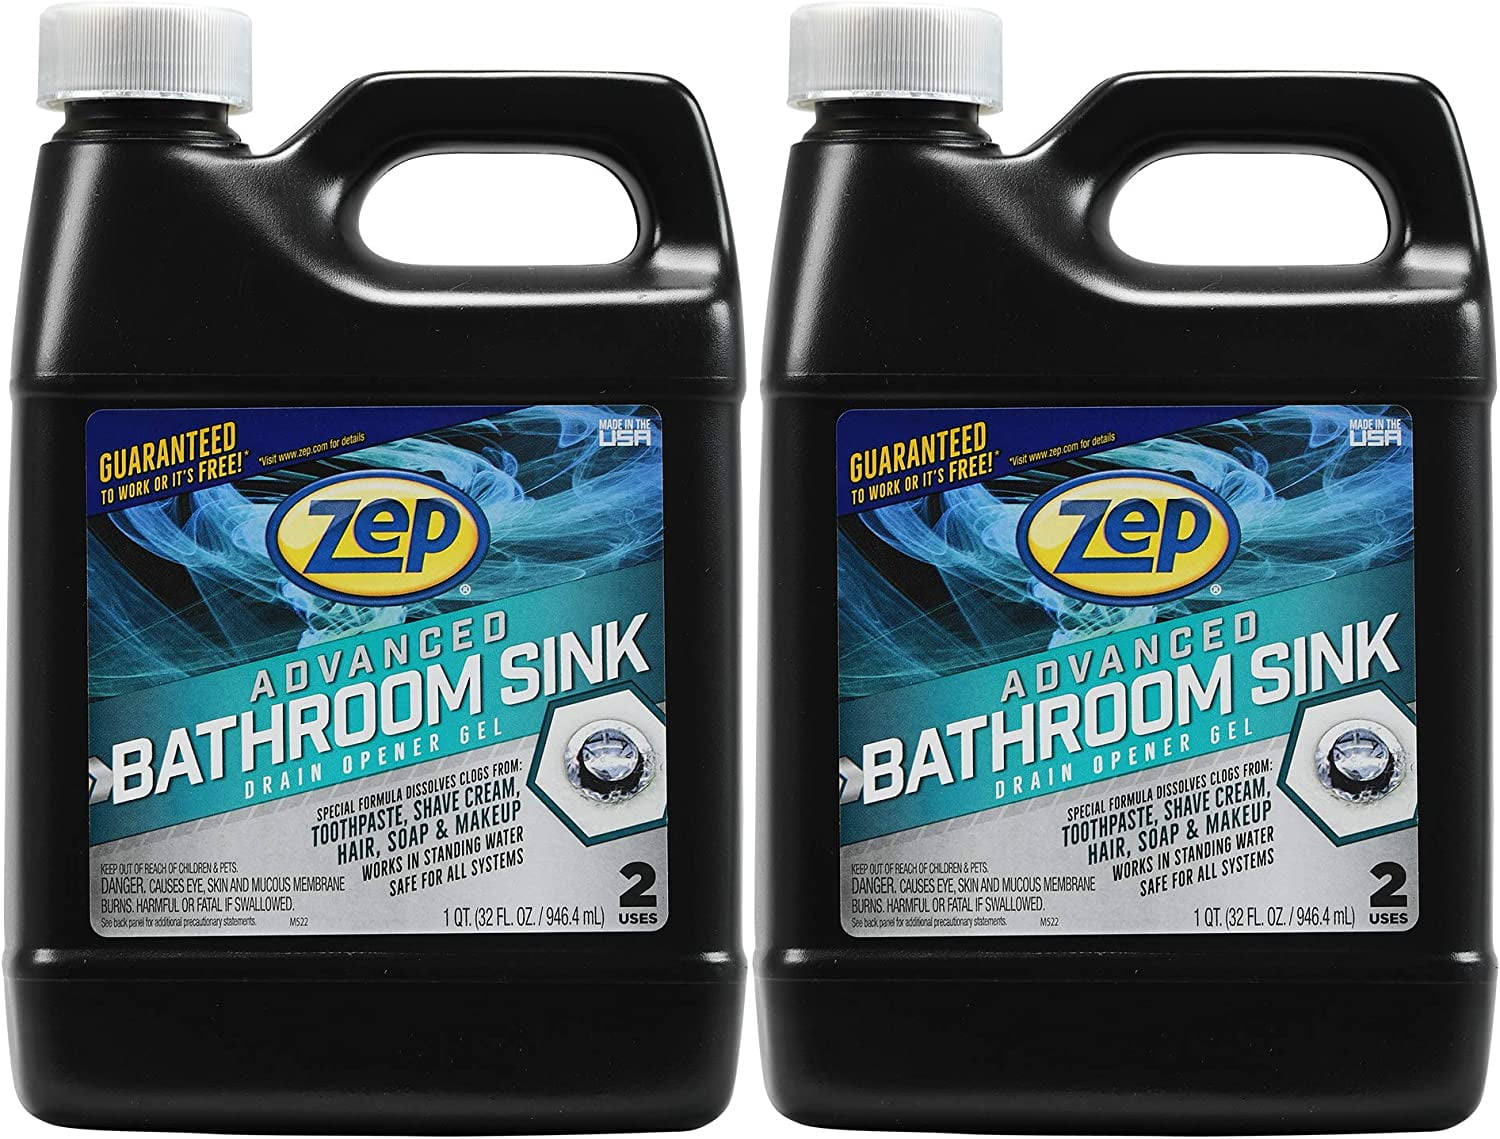 zep advanced bathroom sink drain opener gel reviews